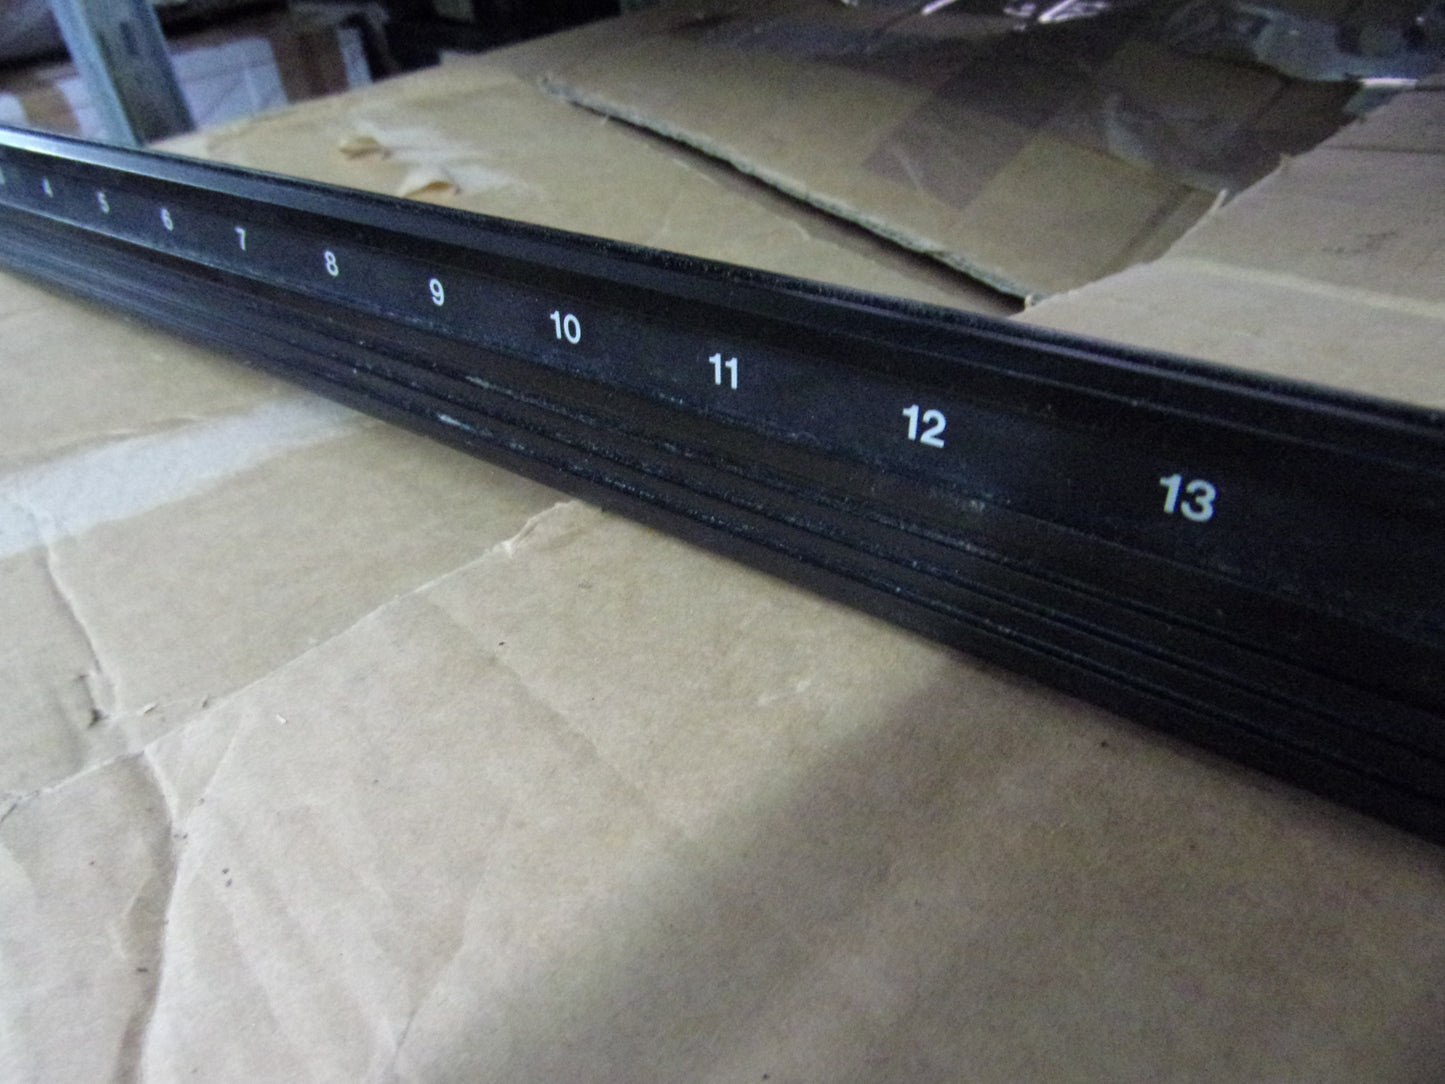 Tascam M-3500 M-3700 front aluminium profile in 2 sizes